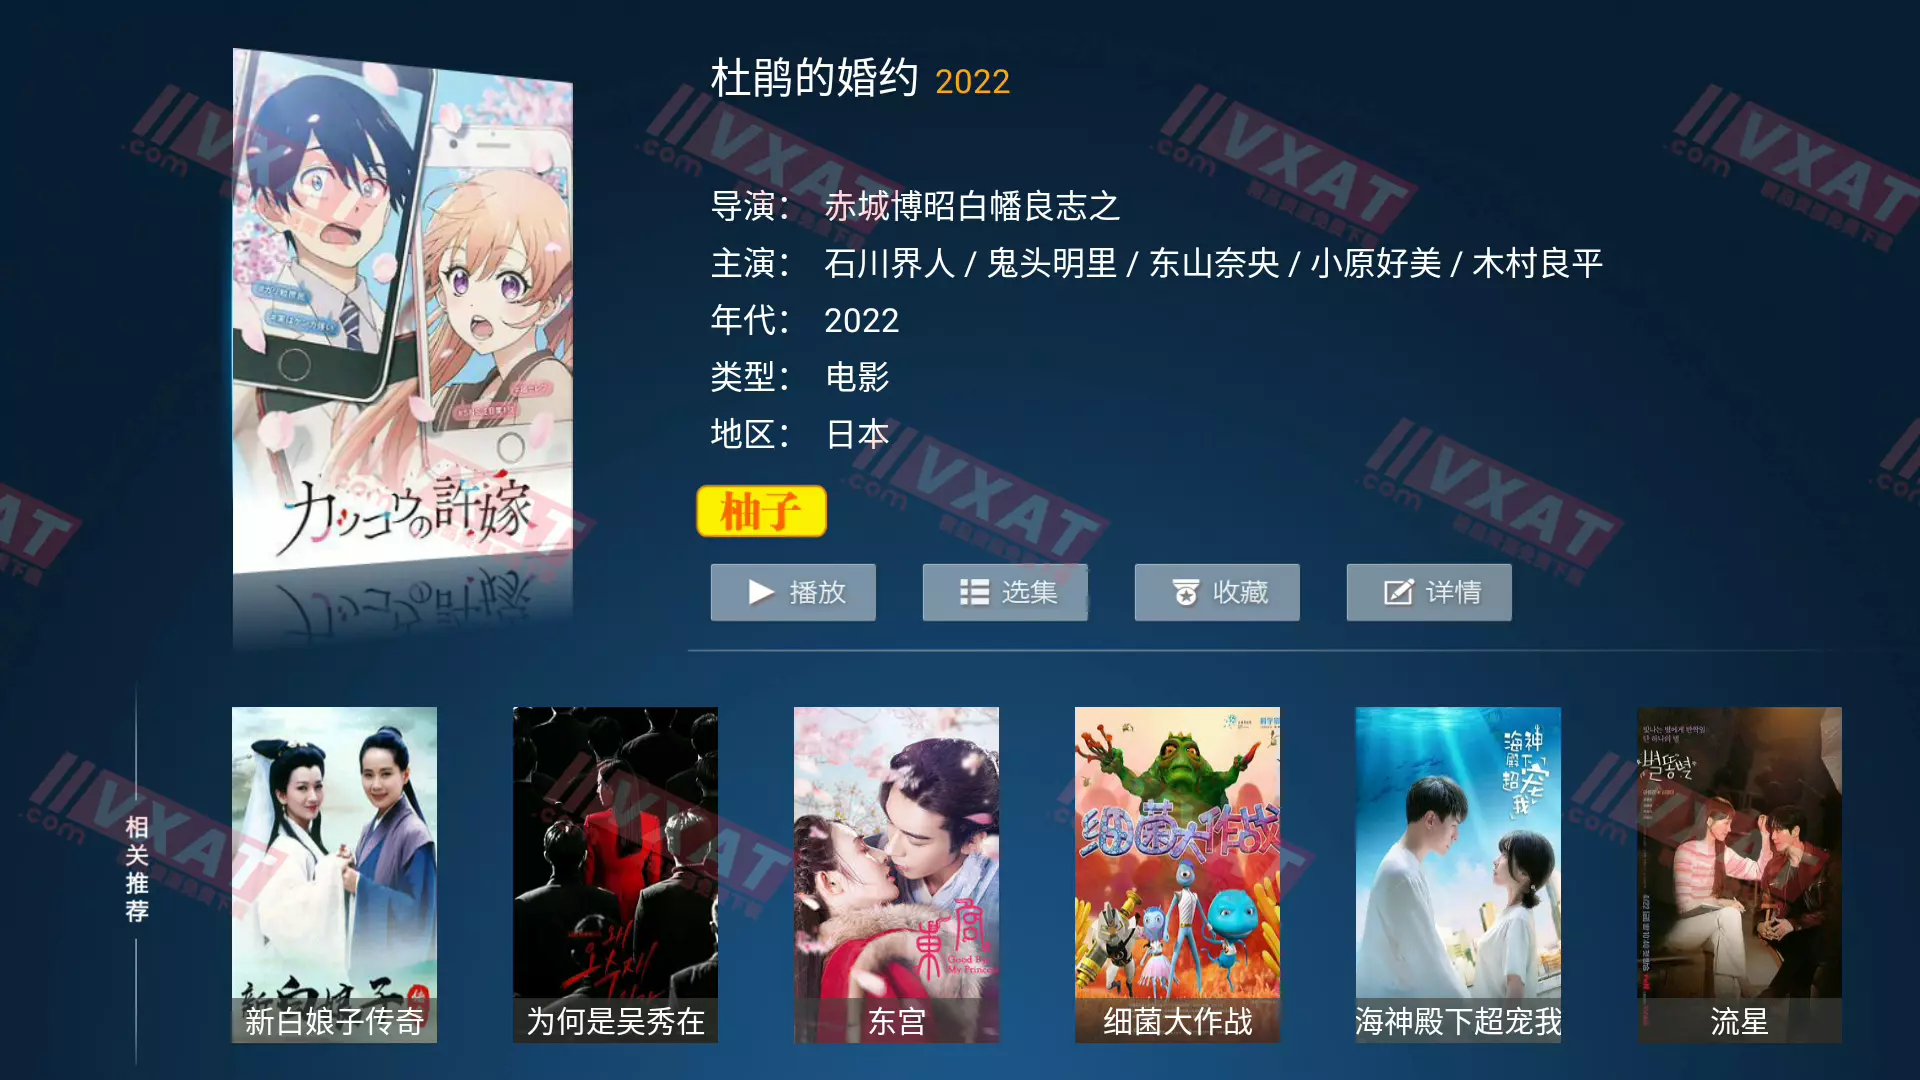 柚子TV_v5.0.0 电视版 免登录 VIP特别版